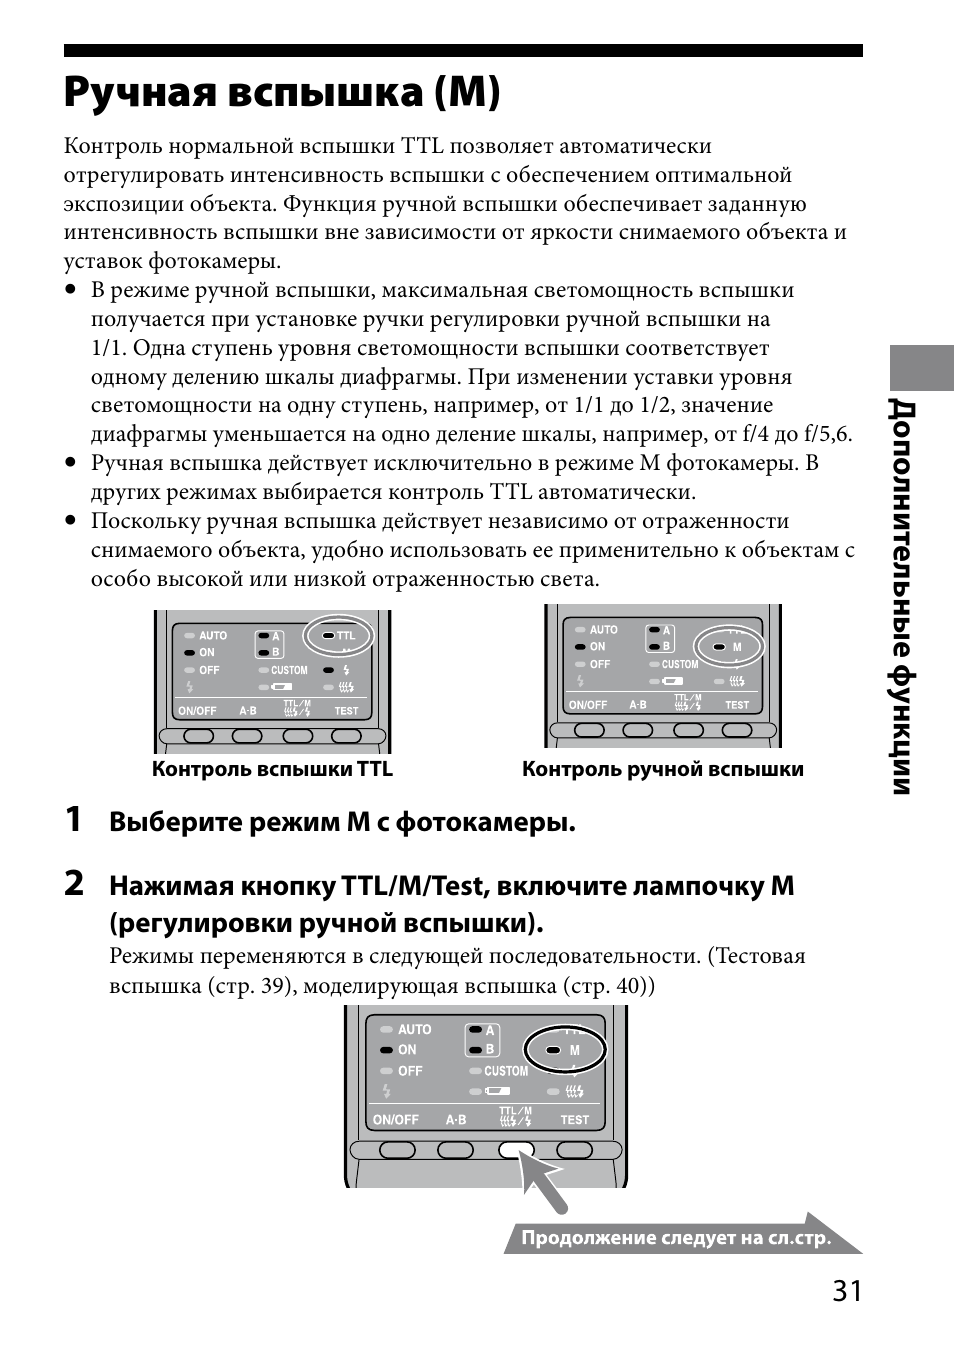 Ручная вспышка (м), 1 д ополни те льные ф ункции | Sony HVL-MT24AM User Manual | Page 265 / 295